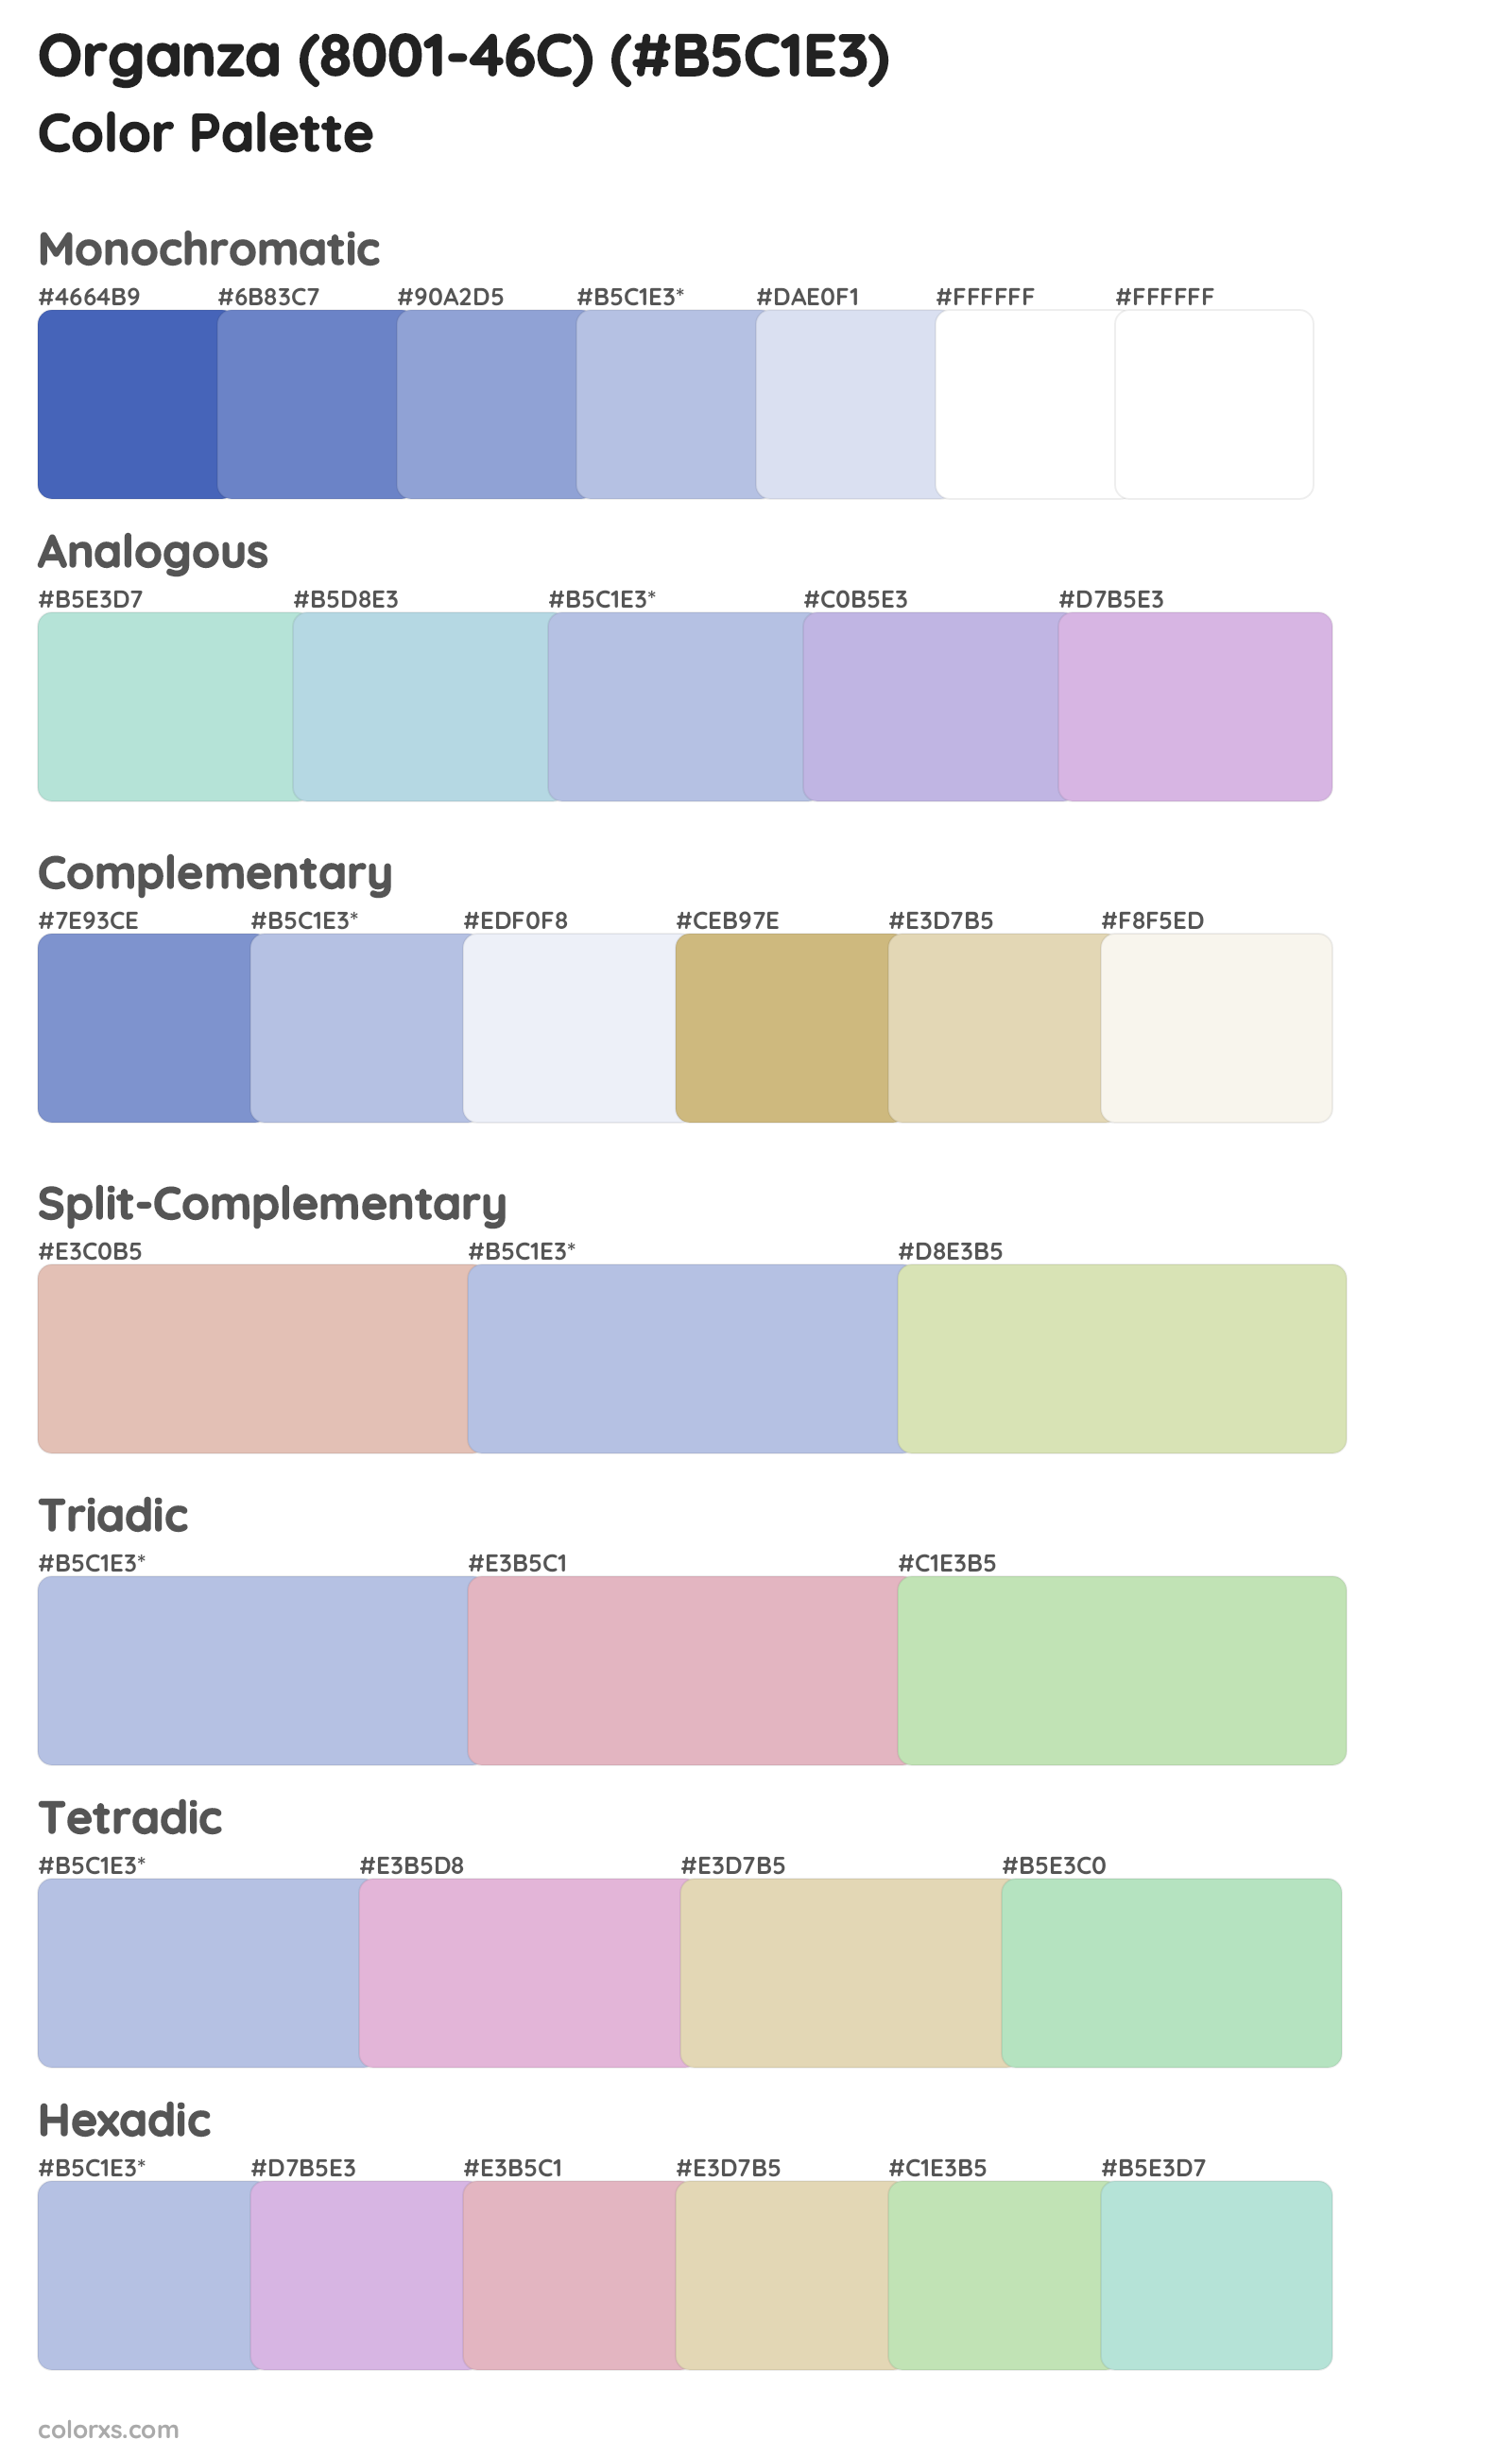 Organza (8001-46C) Color Scheme Palettes